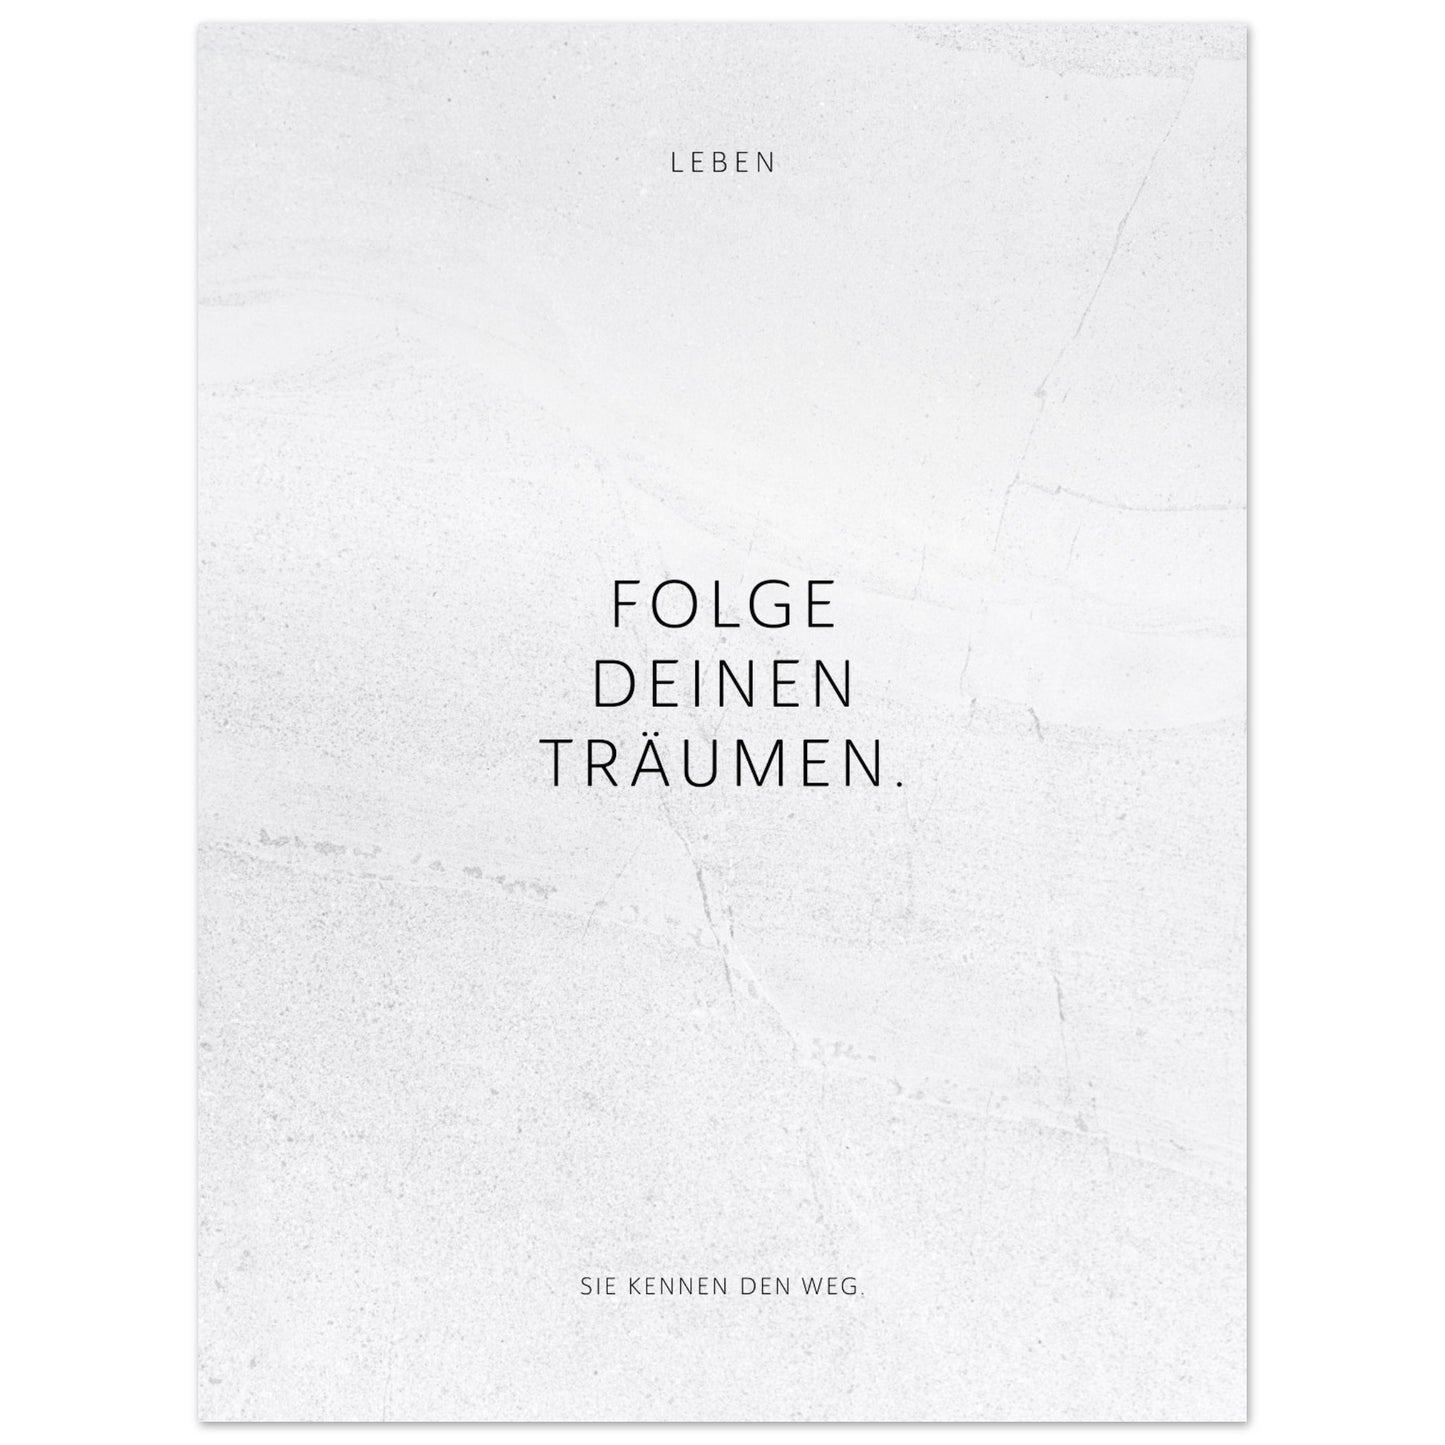 Folge Deinen Träumen. – Poster Seidenmatt Weiss in gewellter Steinoptik – ohne Rahmen